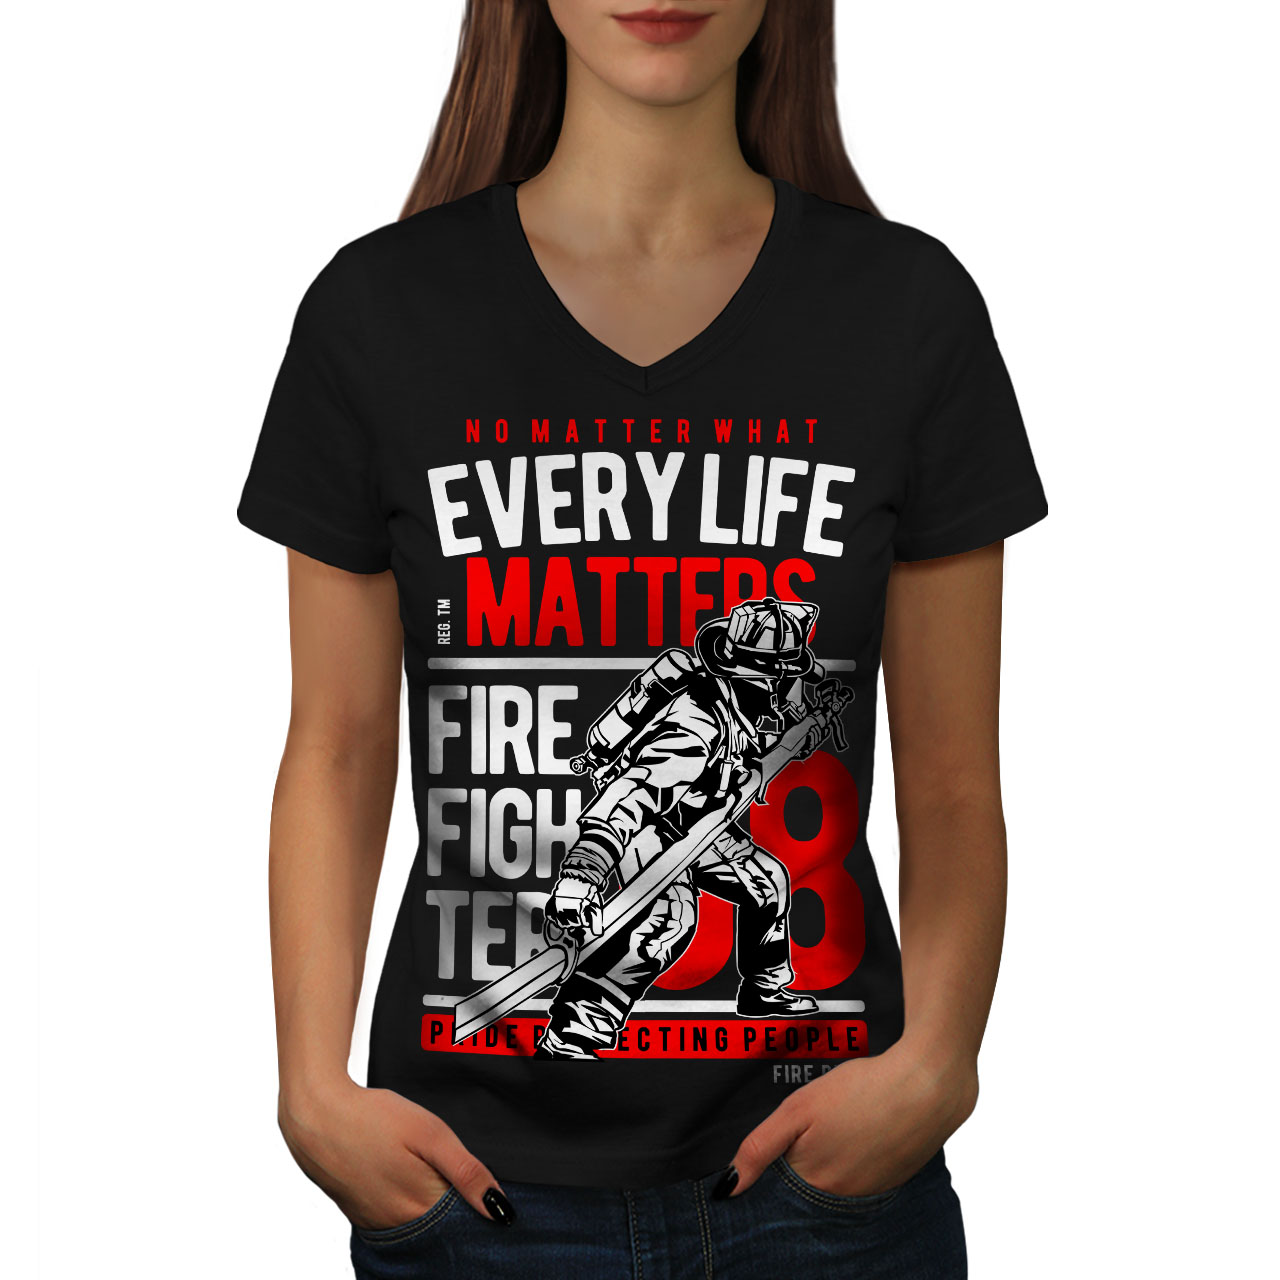 Firefighter Life Tee Shirt Firefighter T Shirt